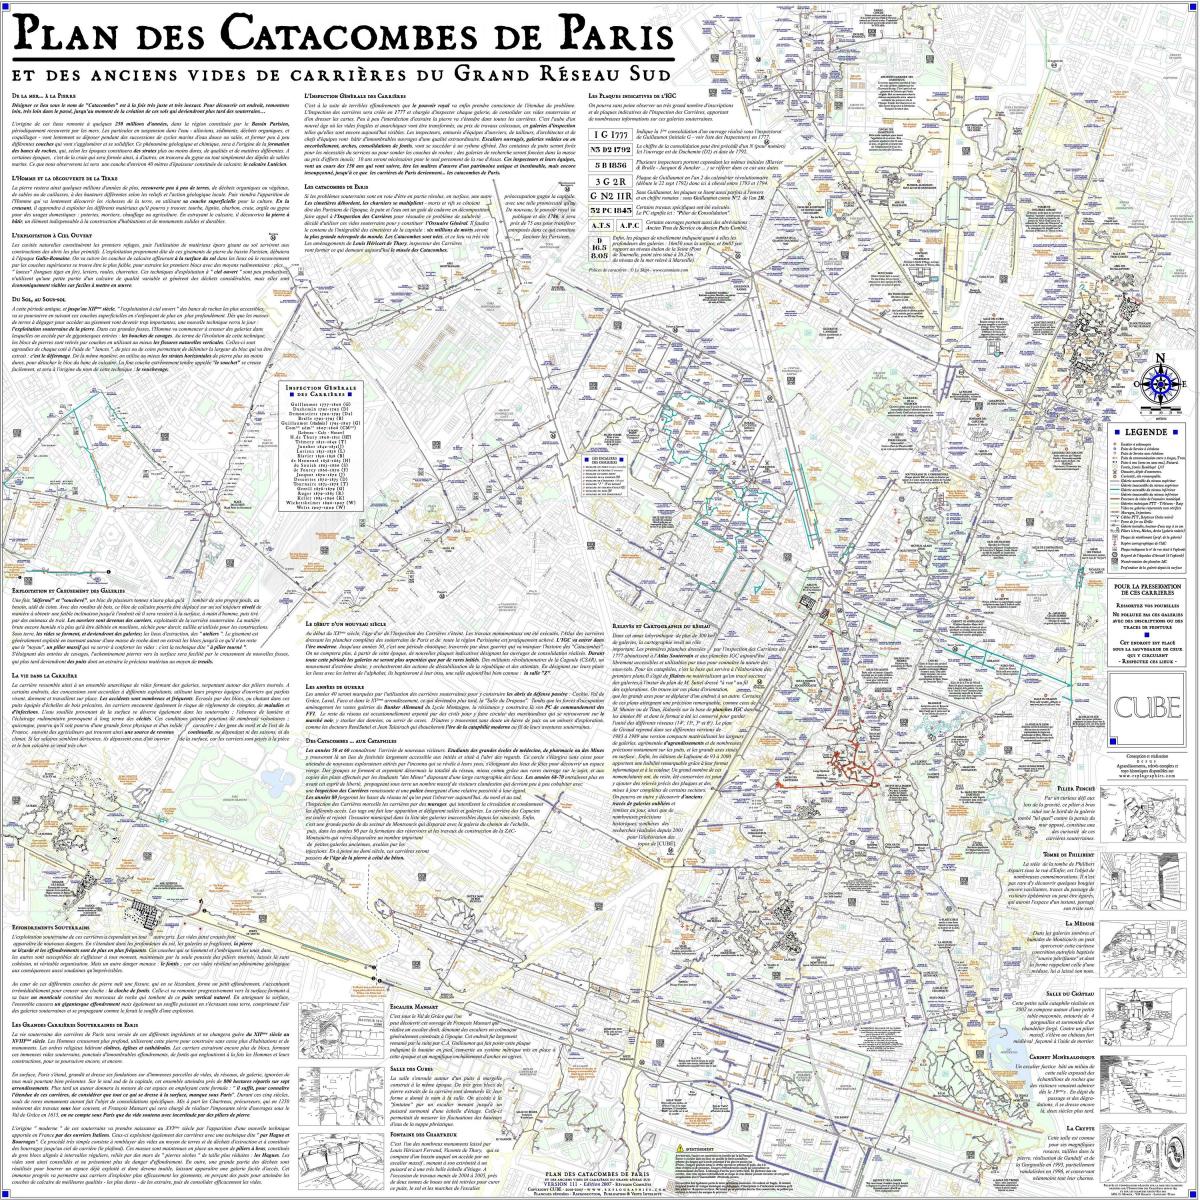 O mapa de Paris catacombs